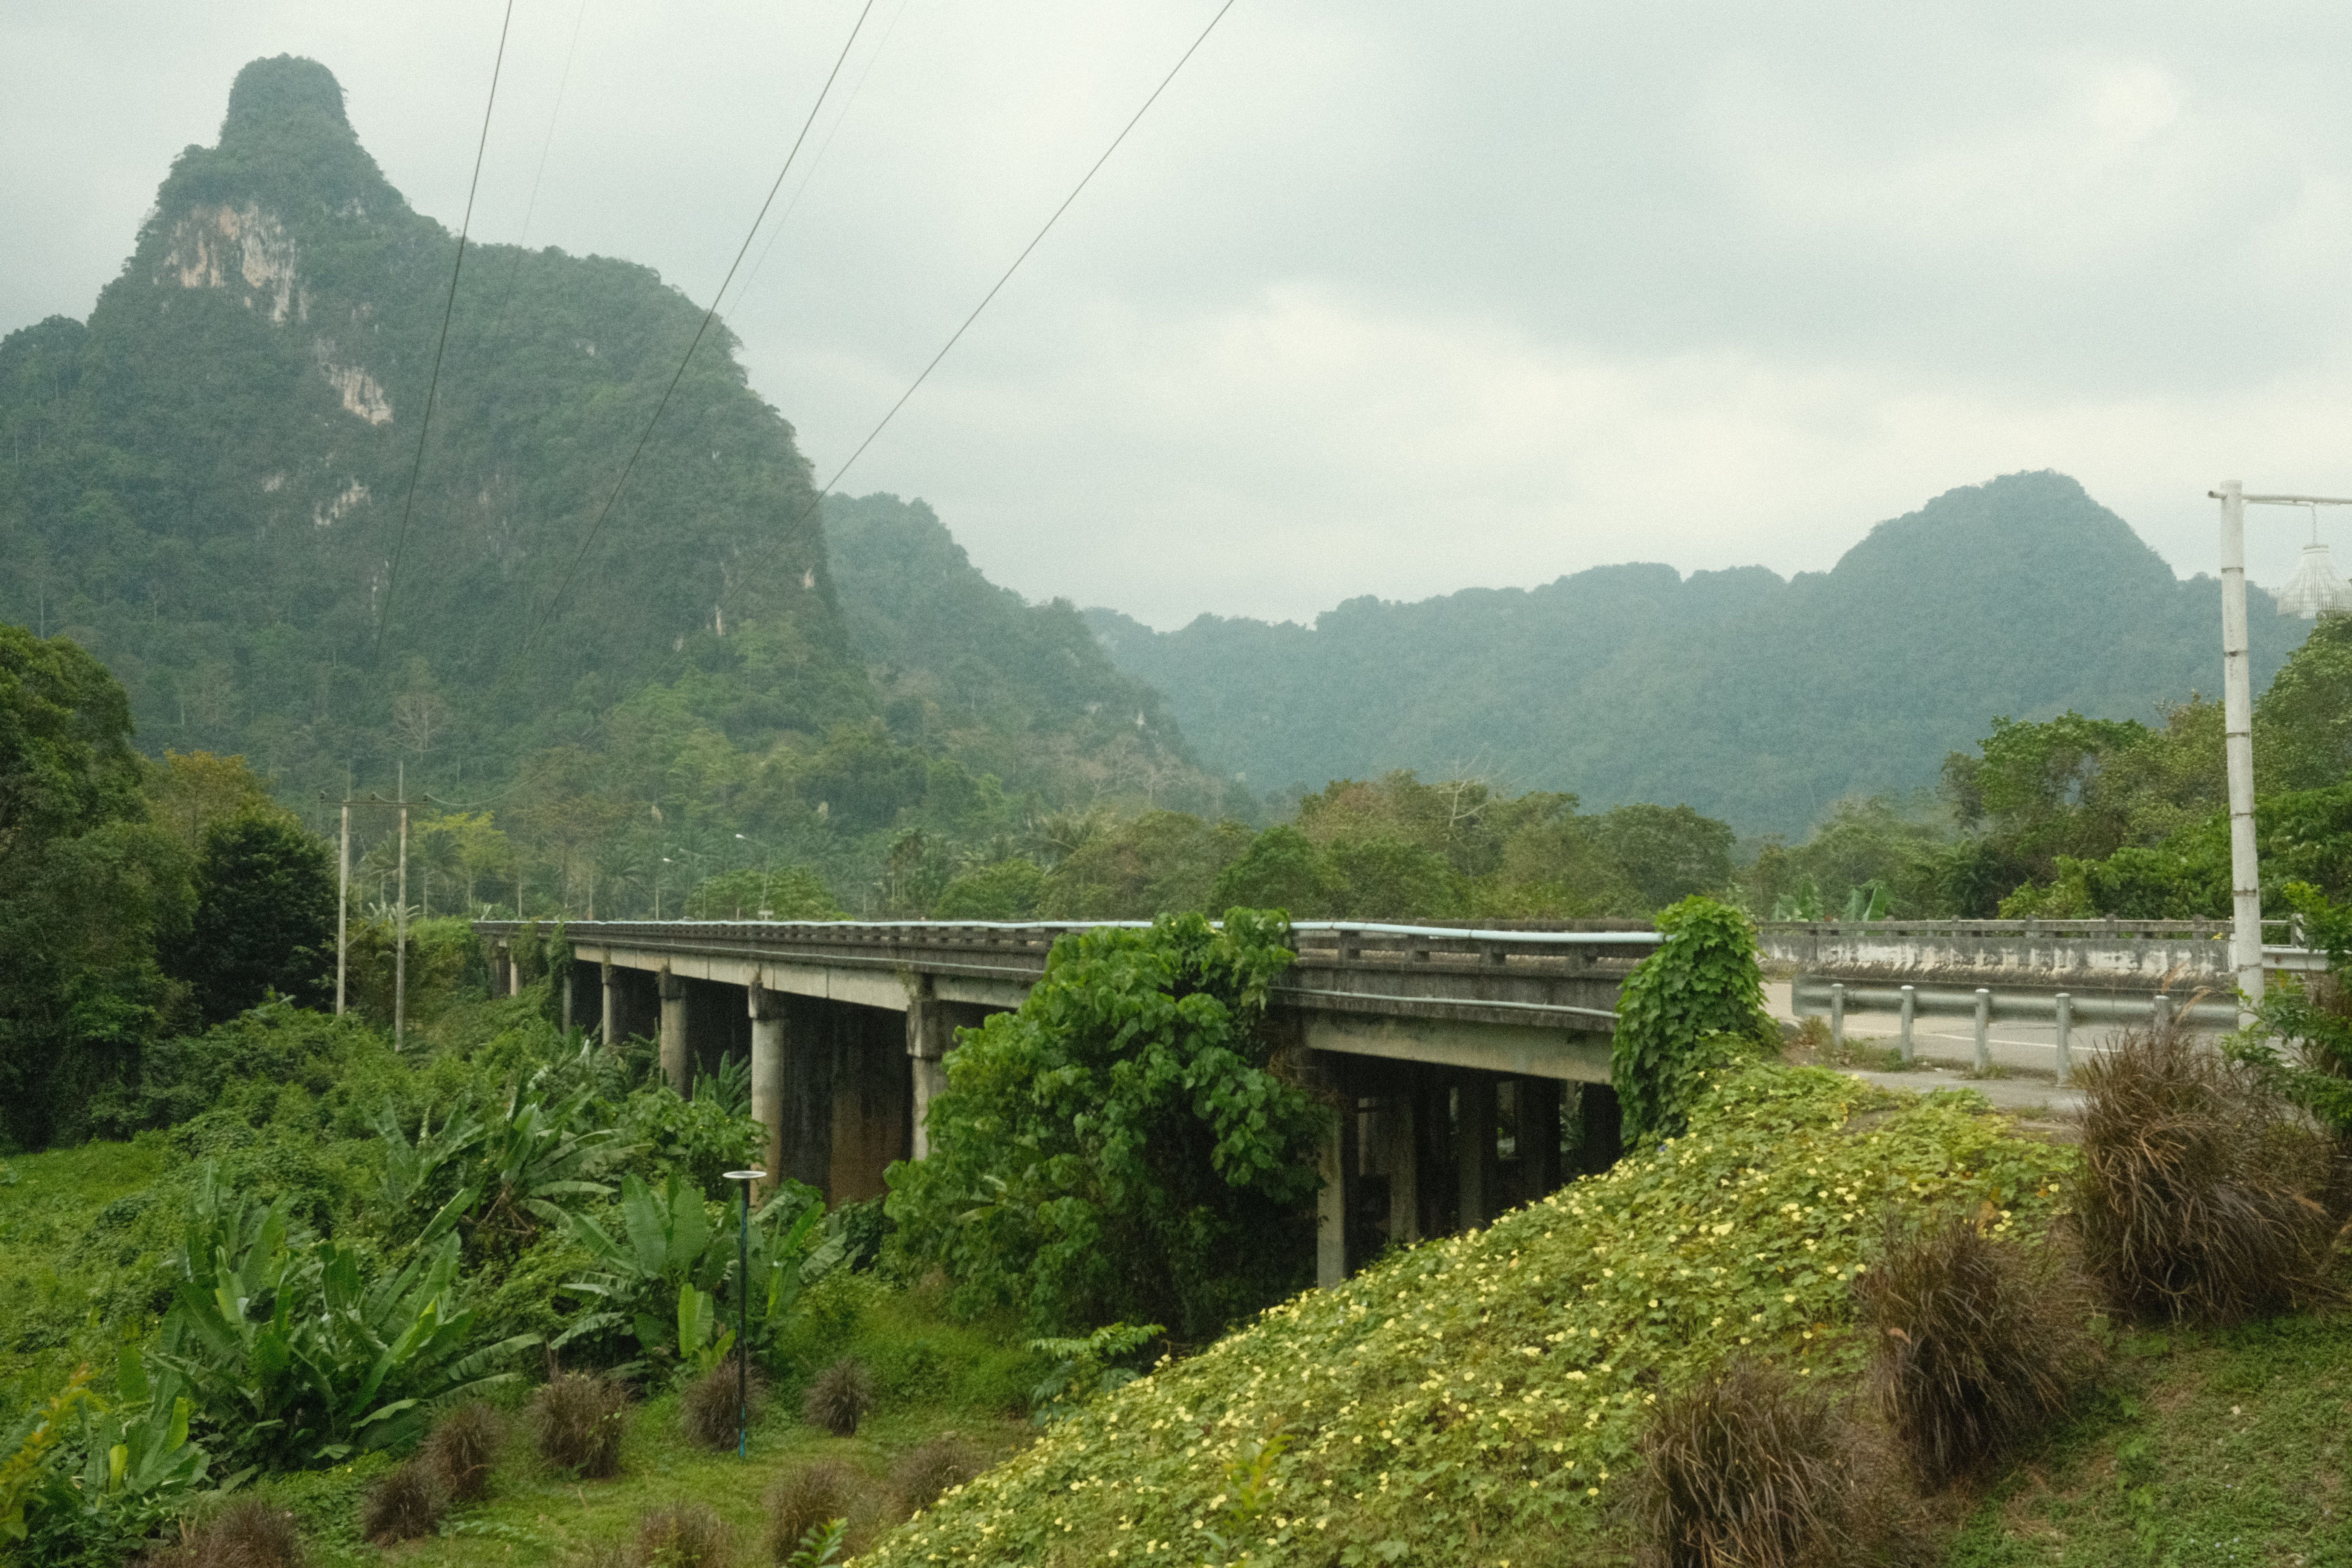 Train tracks in Khao Sok National Park, Thailand